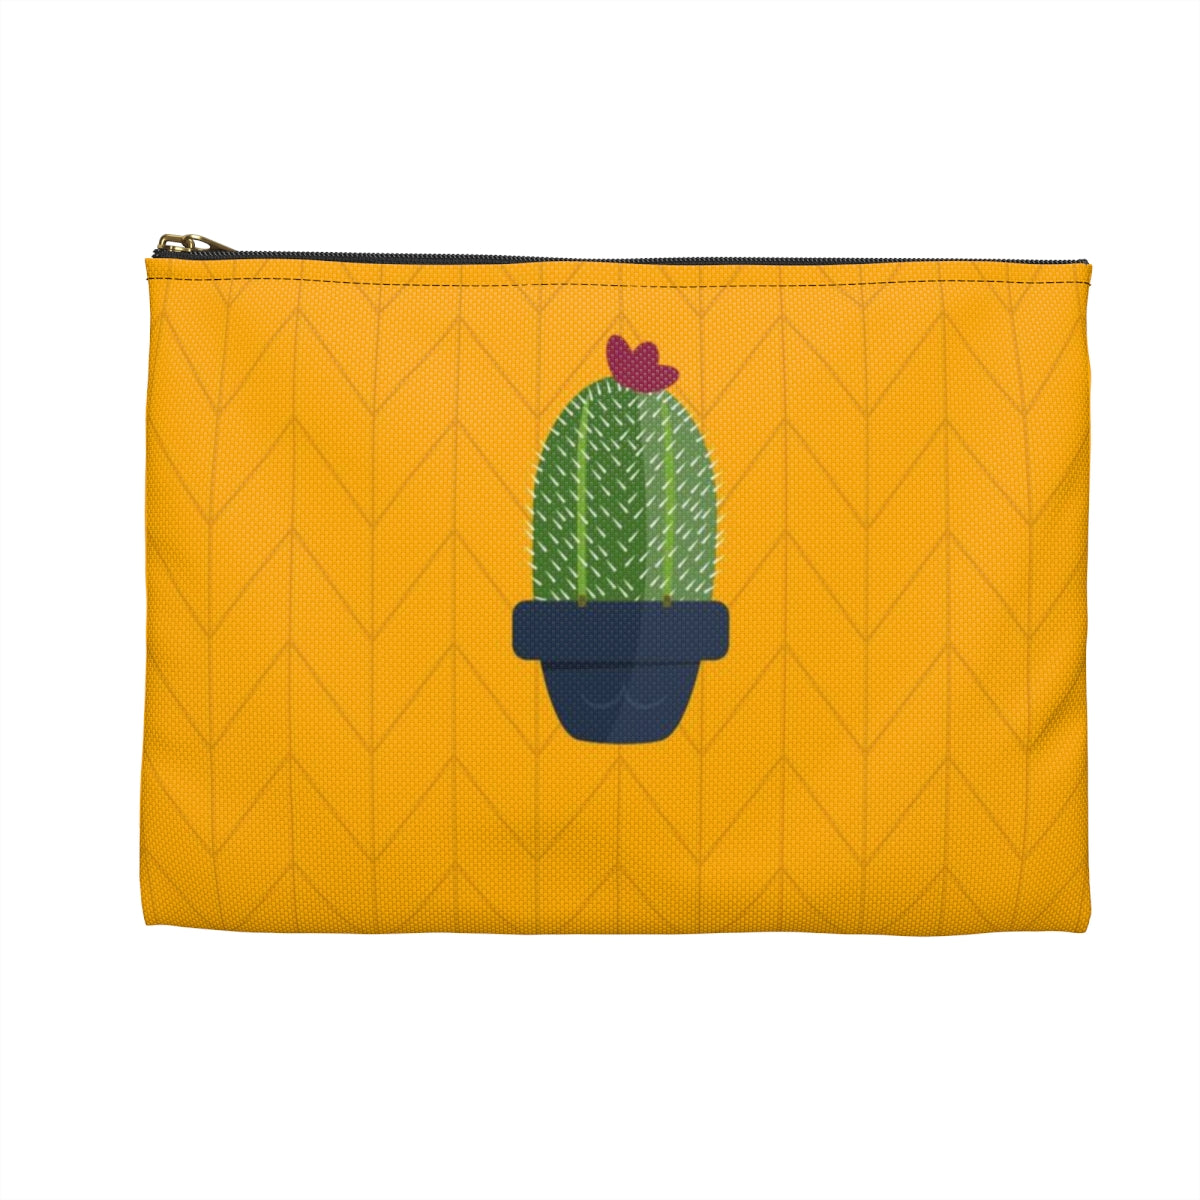 Flat Zipper Pouch - Plant Nerd Cactus